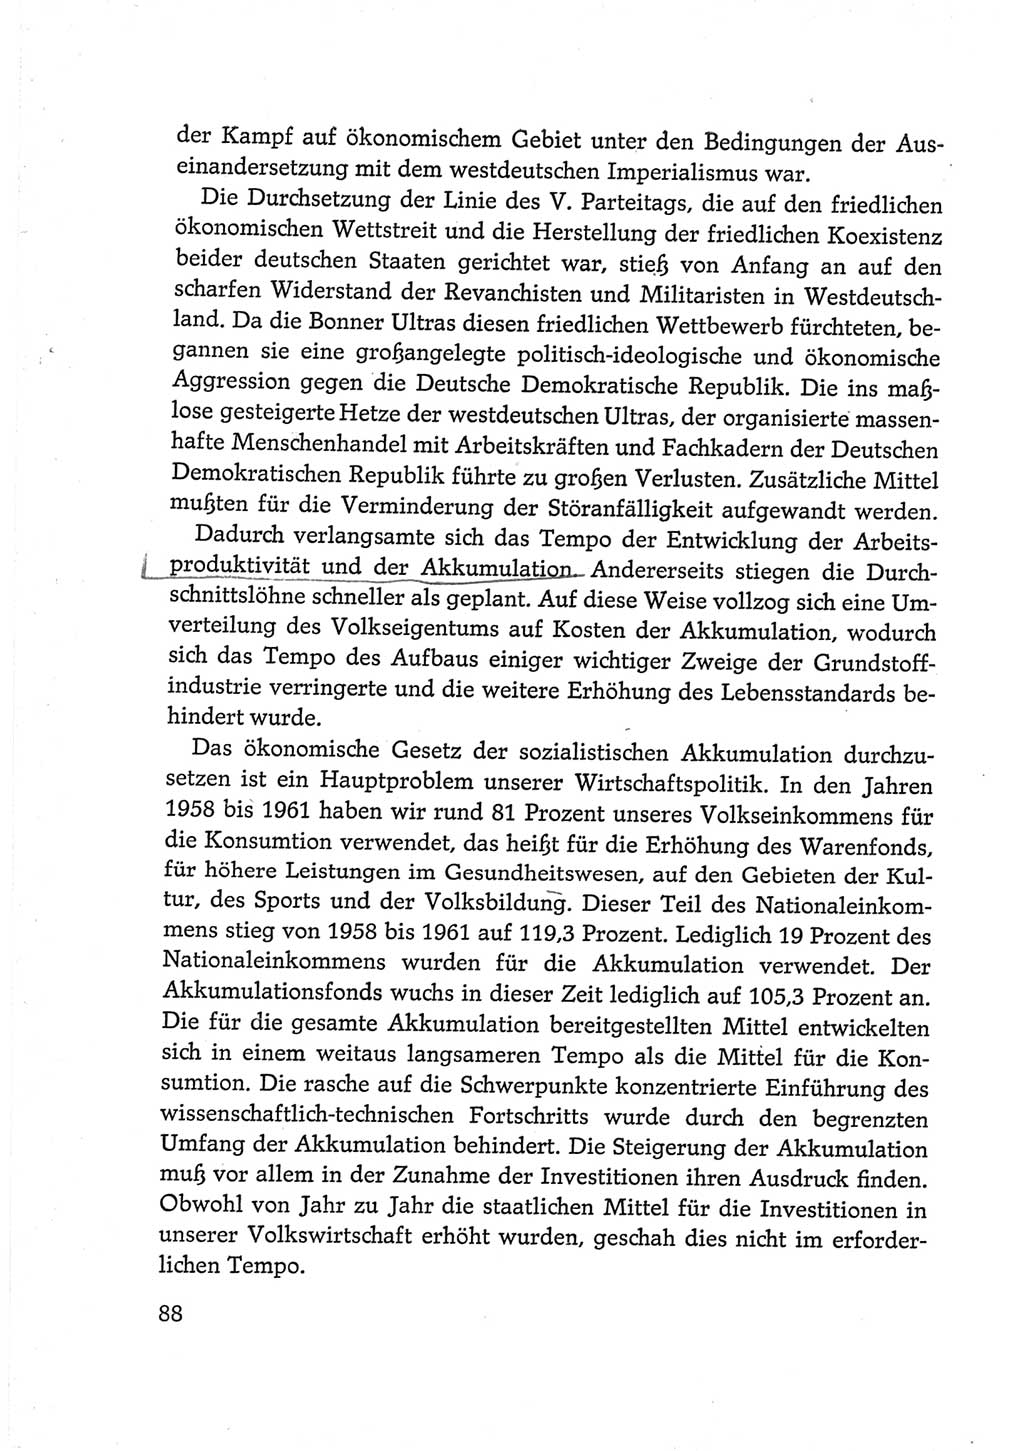 Protokoll der Verhandlungen des Ⅵ. Parteitages der Sozialistischen Einheitspartei Deutschlands (SED) [Deutsche Demokratische Republik (DDR)] 1963, Band Ⅳ, Seite 88 (Prot. Verh. Ⅵ. PT SED DDR 1963, Bd. Ⅳ, S. 88)